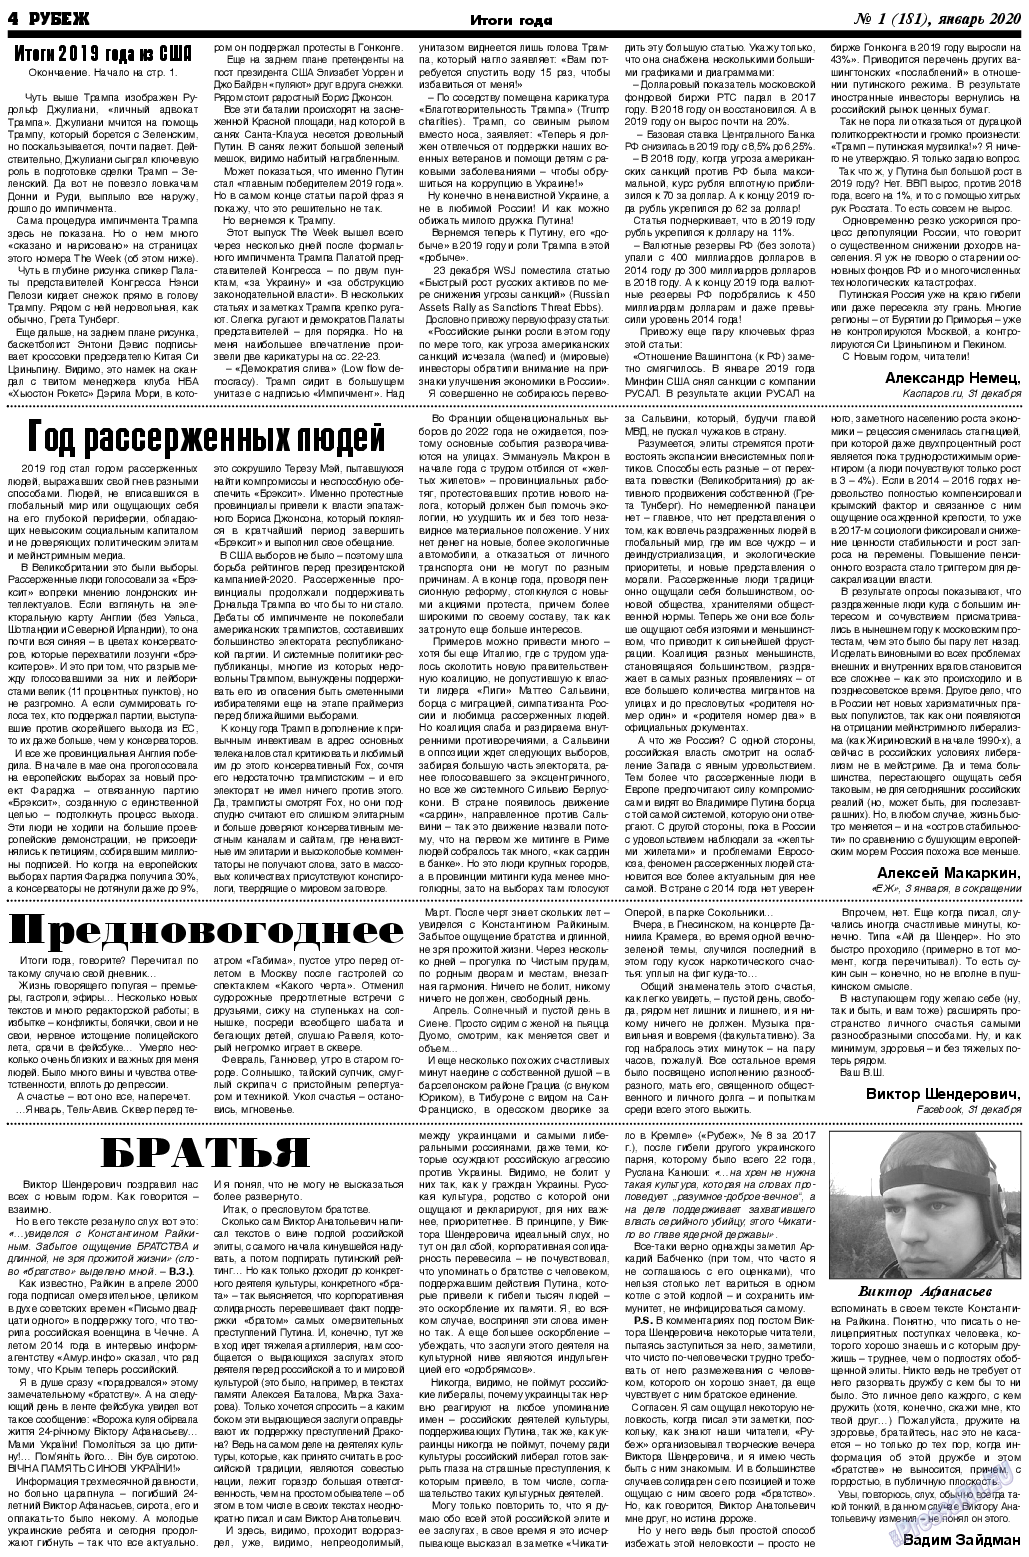 Рубеж (газета). 2020 год, номер 1, стр. 4